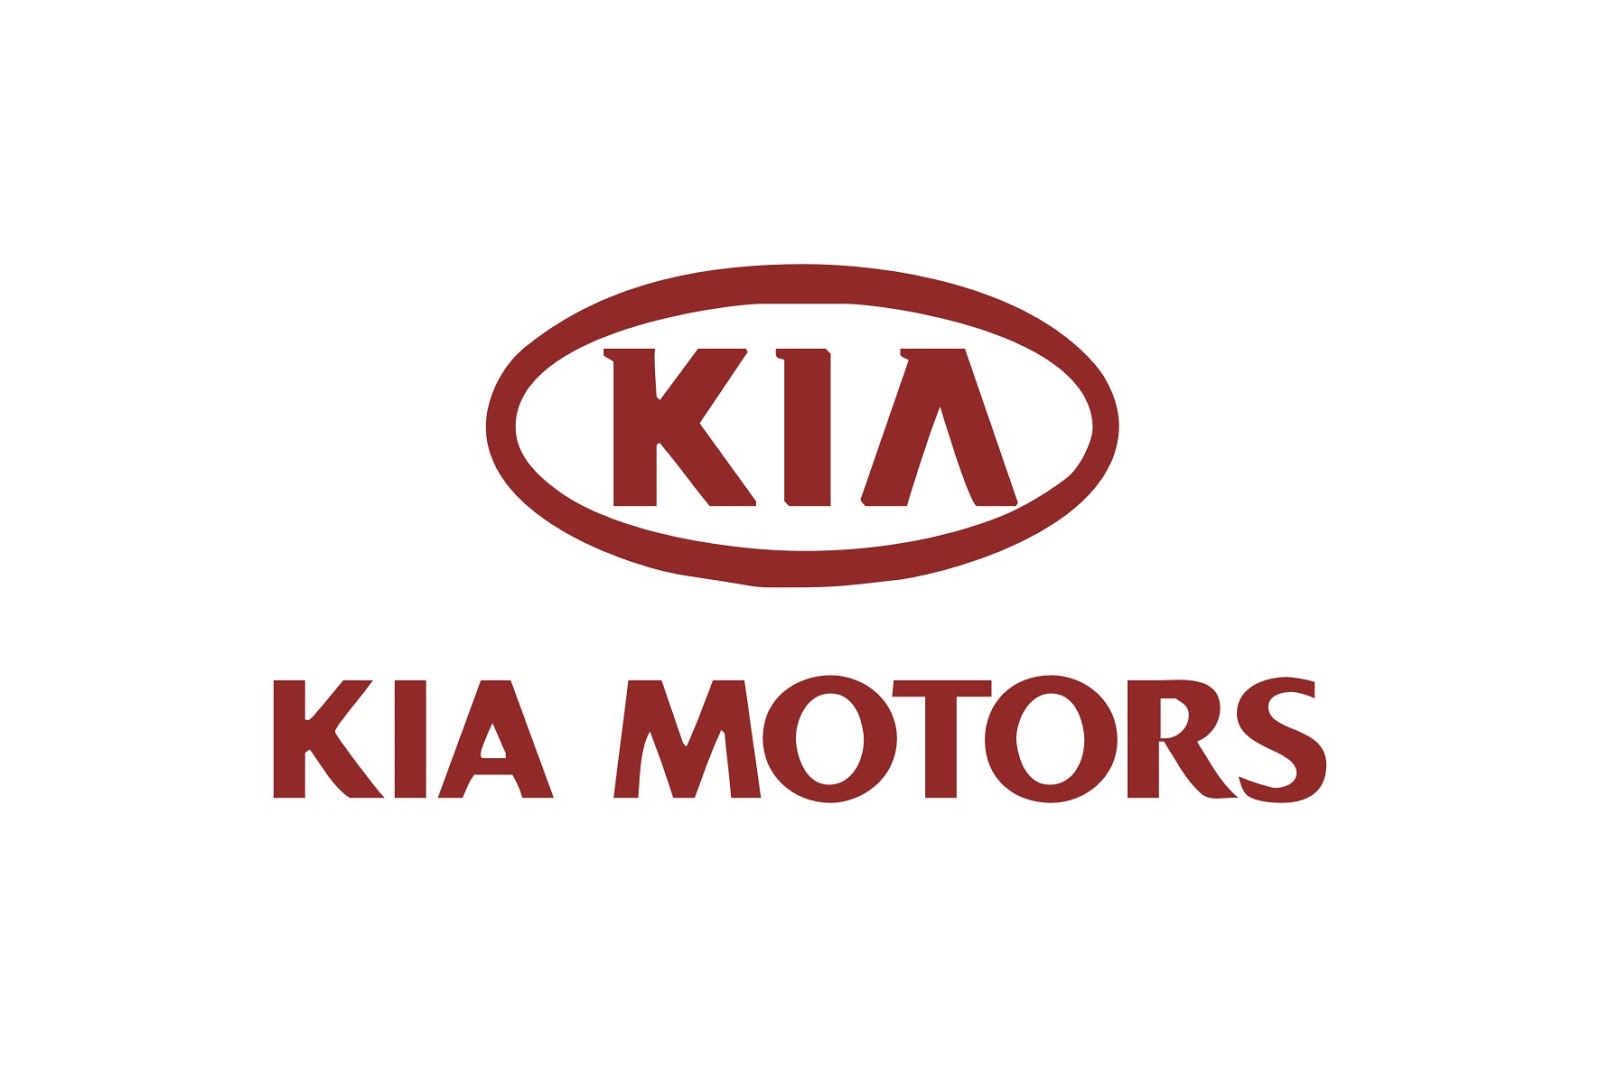 Kia_logo-5.jpg